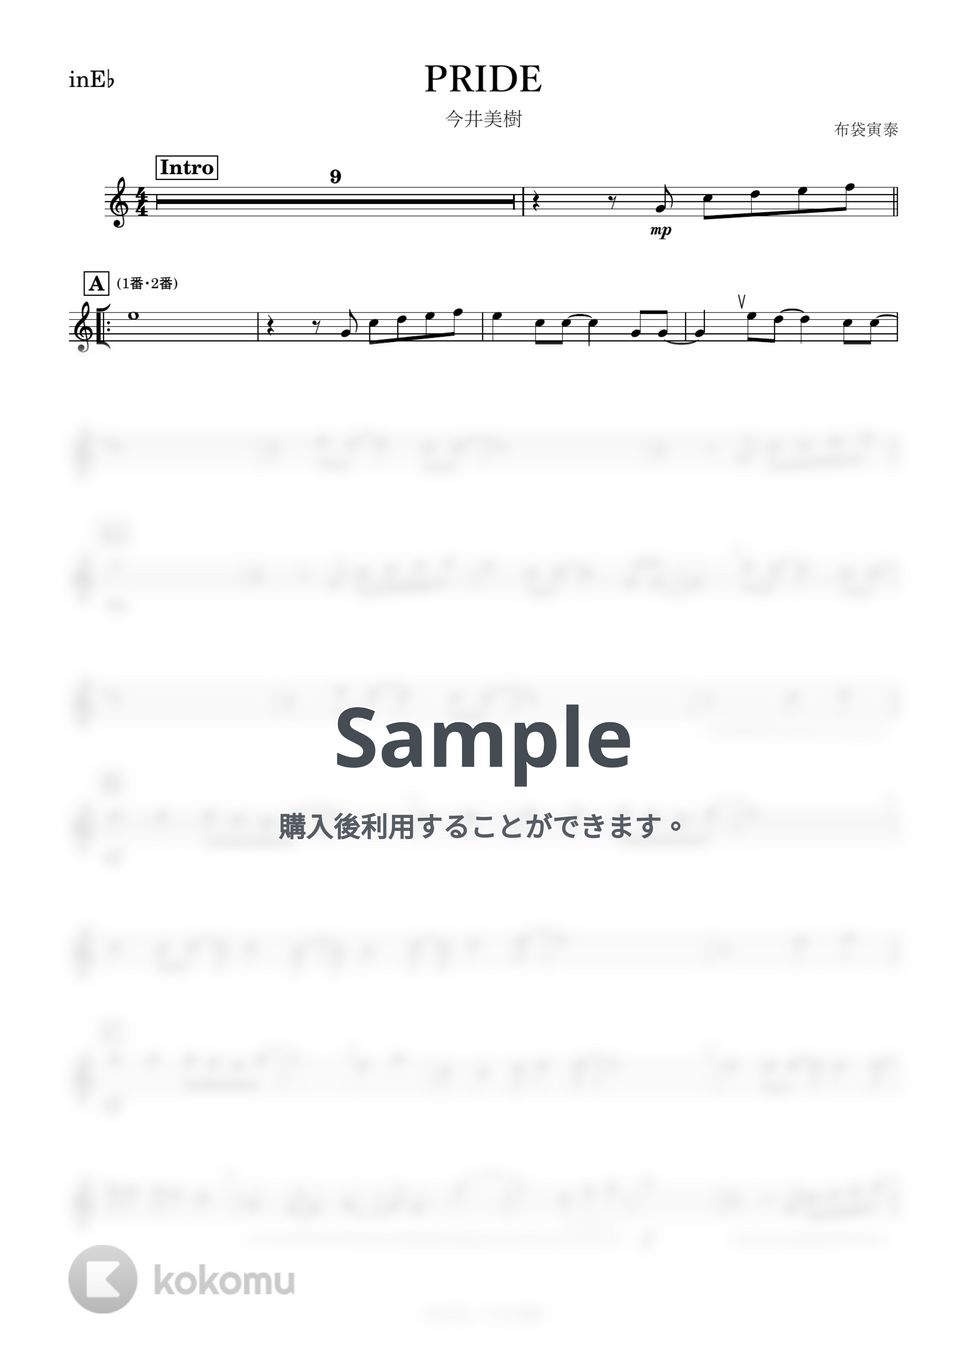 今井美樹 - PRIDE (E♭) by kanamusic